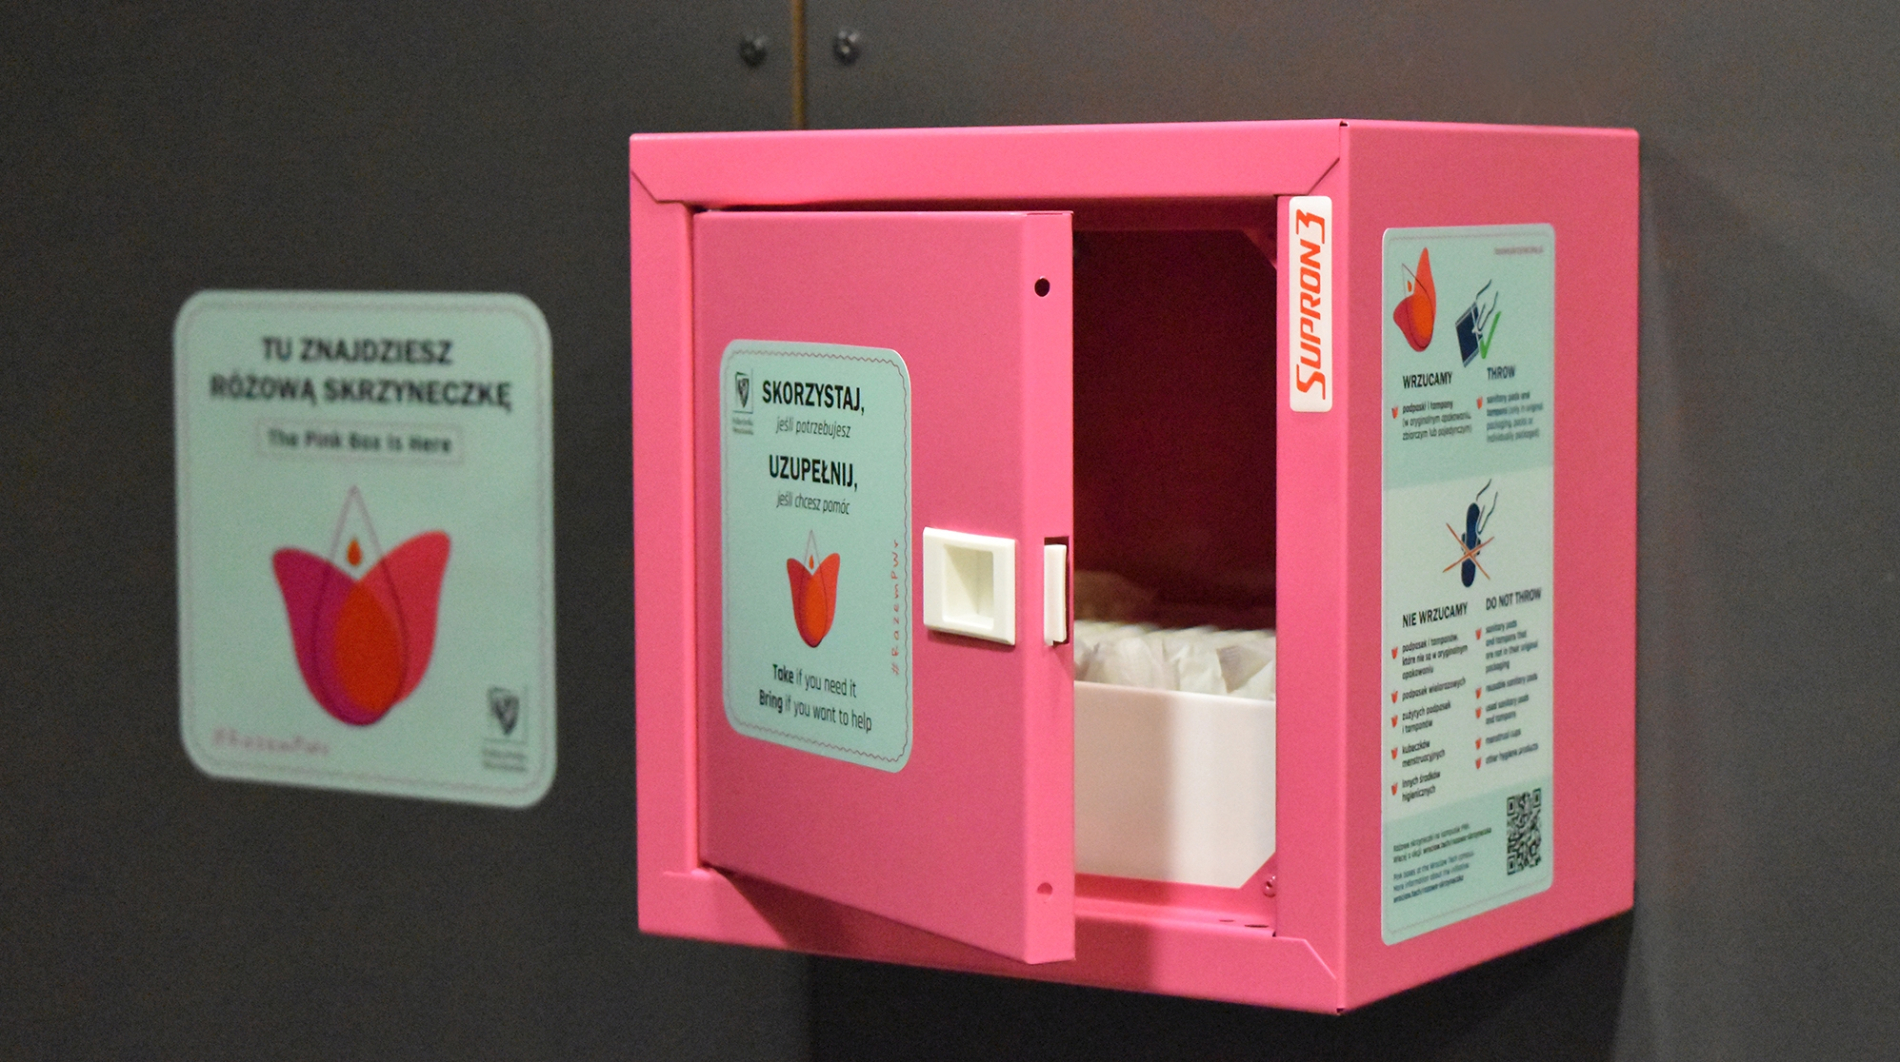 Zdjęcie ilustracyjne różowej skrzyneczki w toalecie uczelni